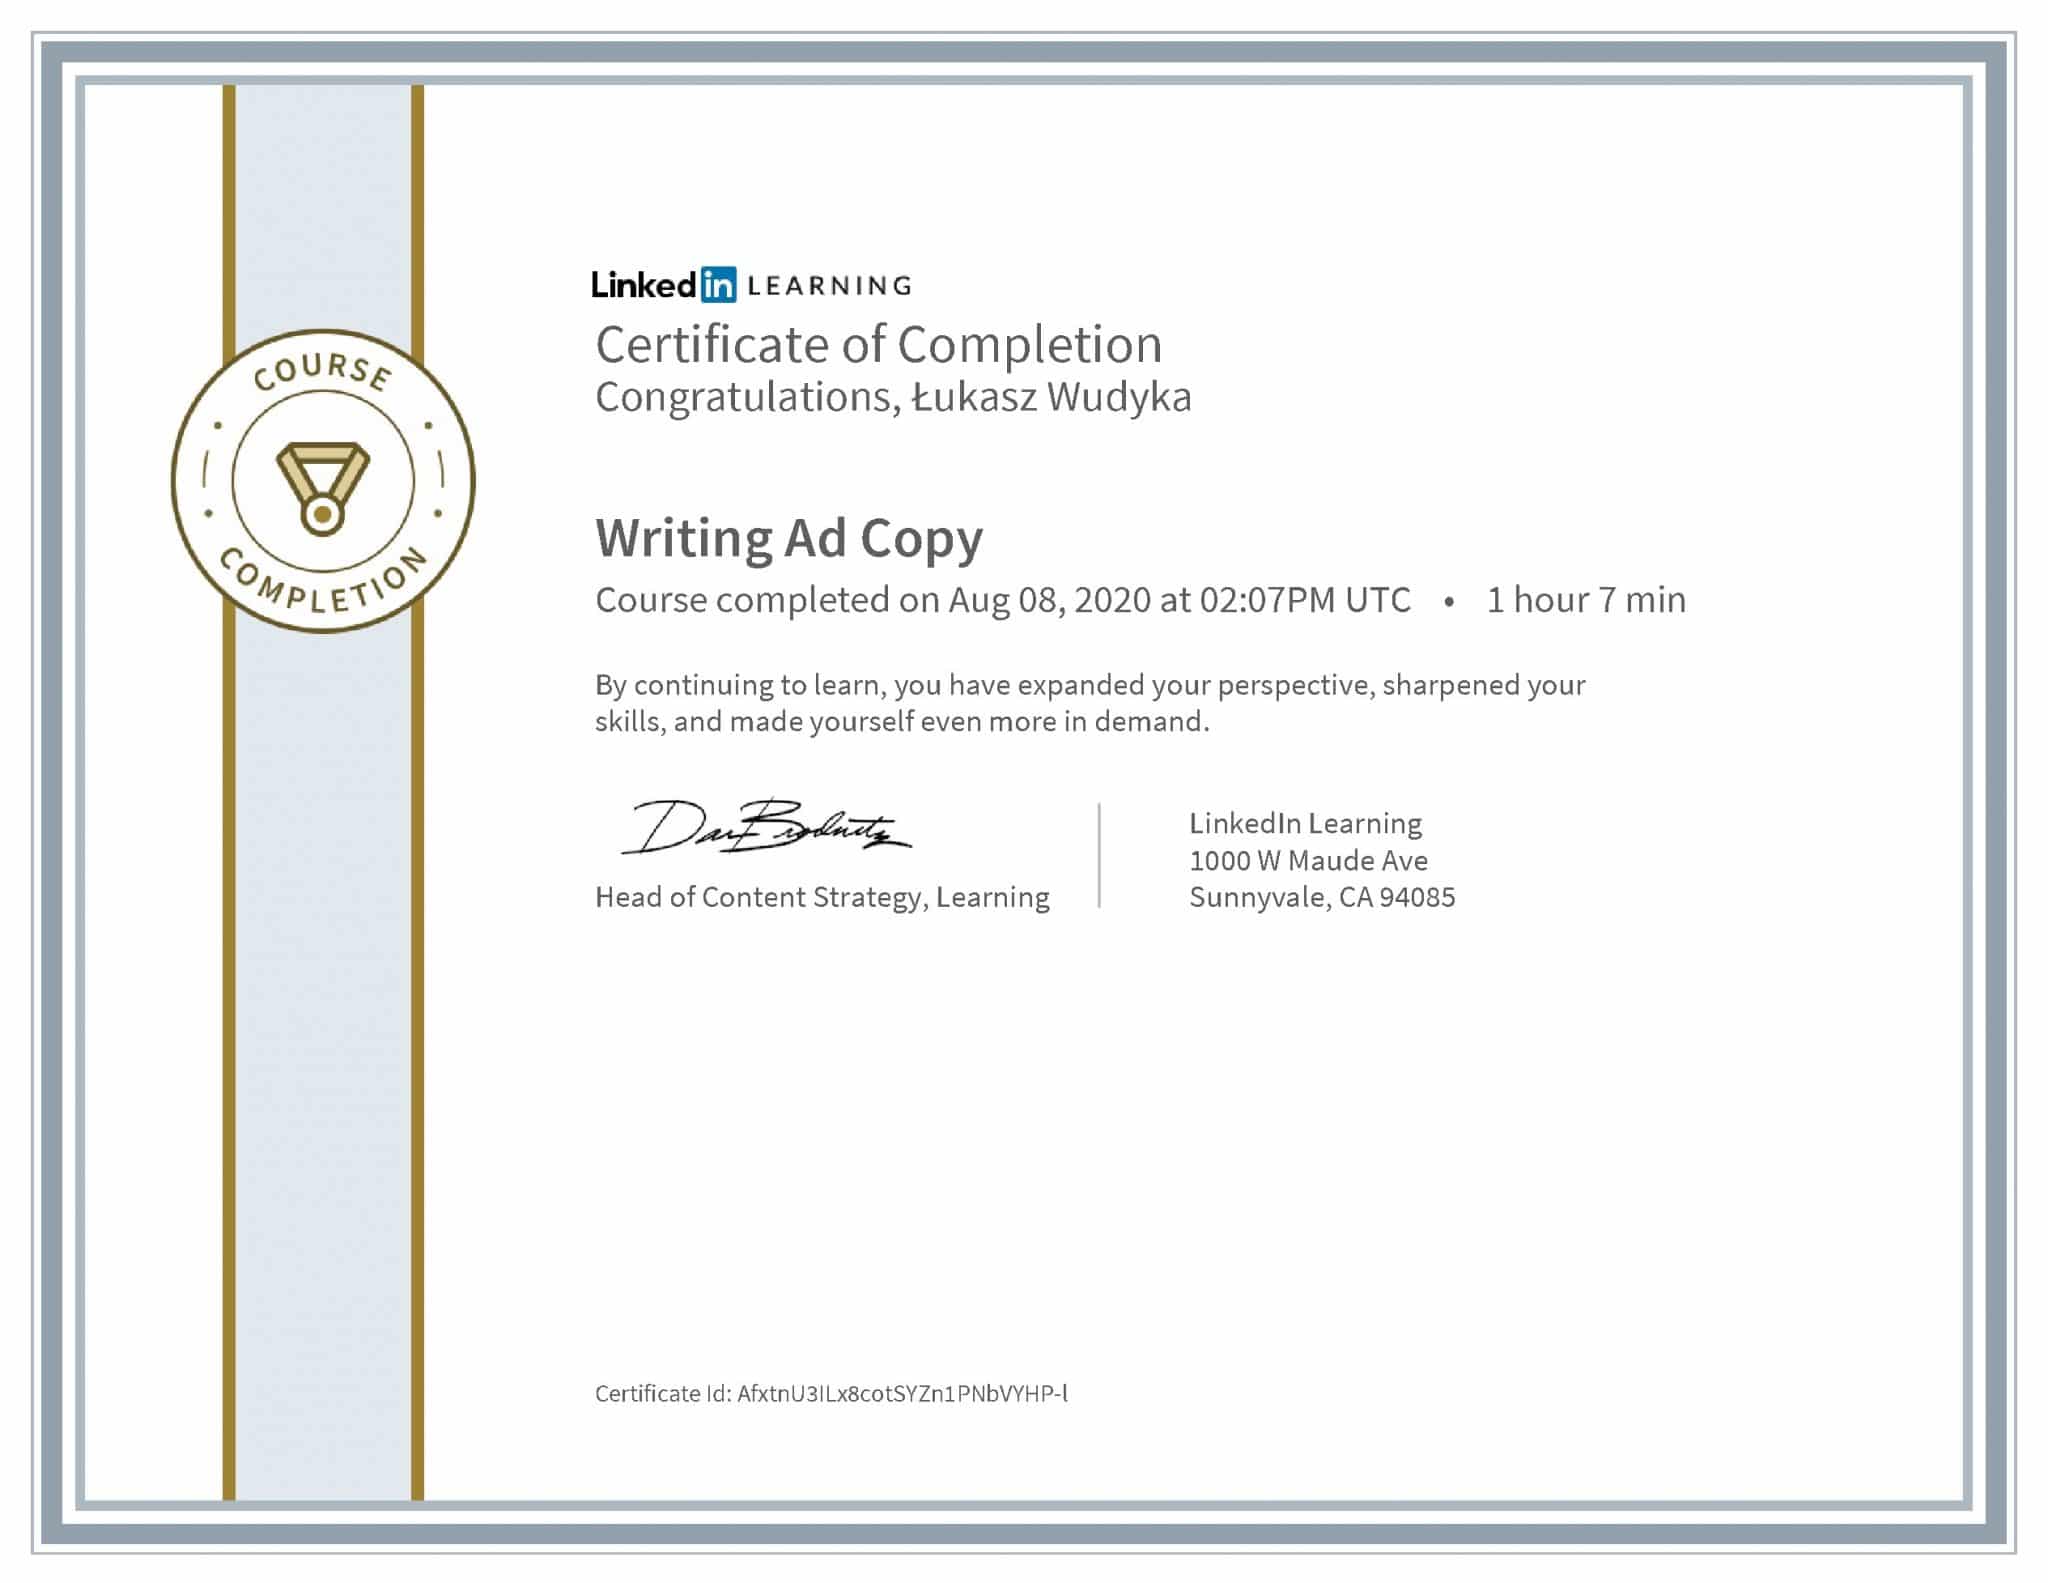 Łukasz Wudyka certyfikat LinkedIn Writing Ad Copy